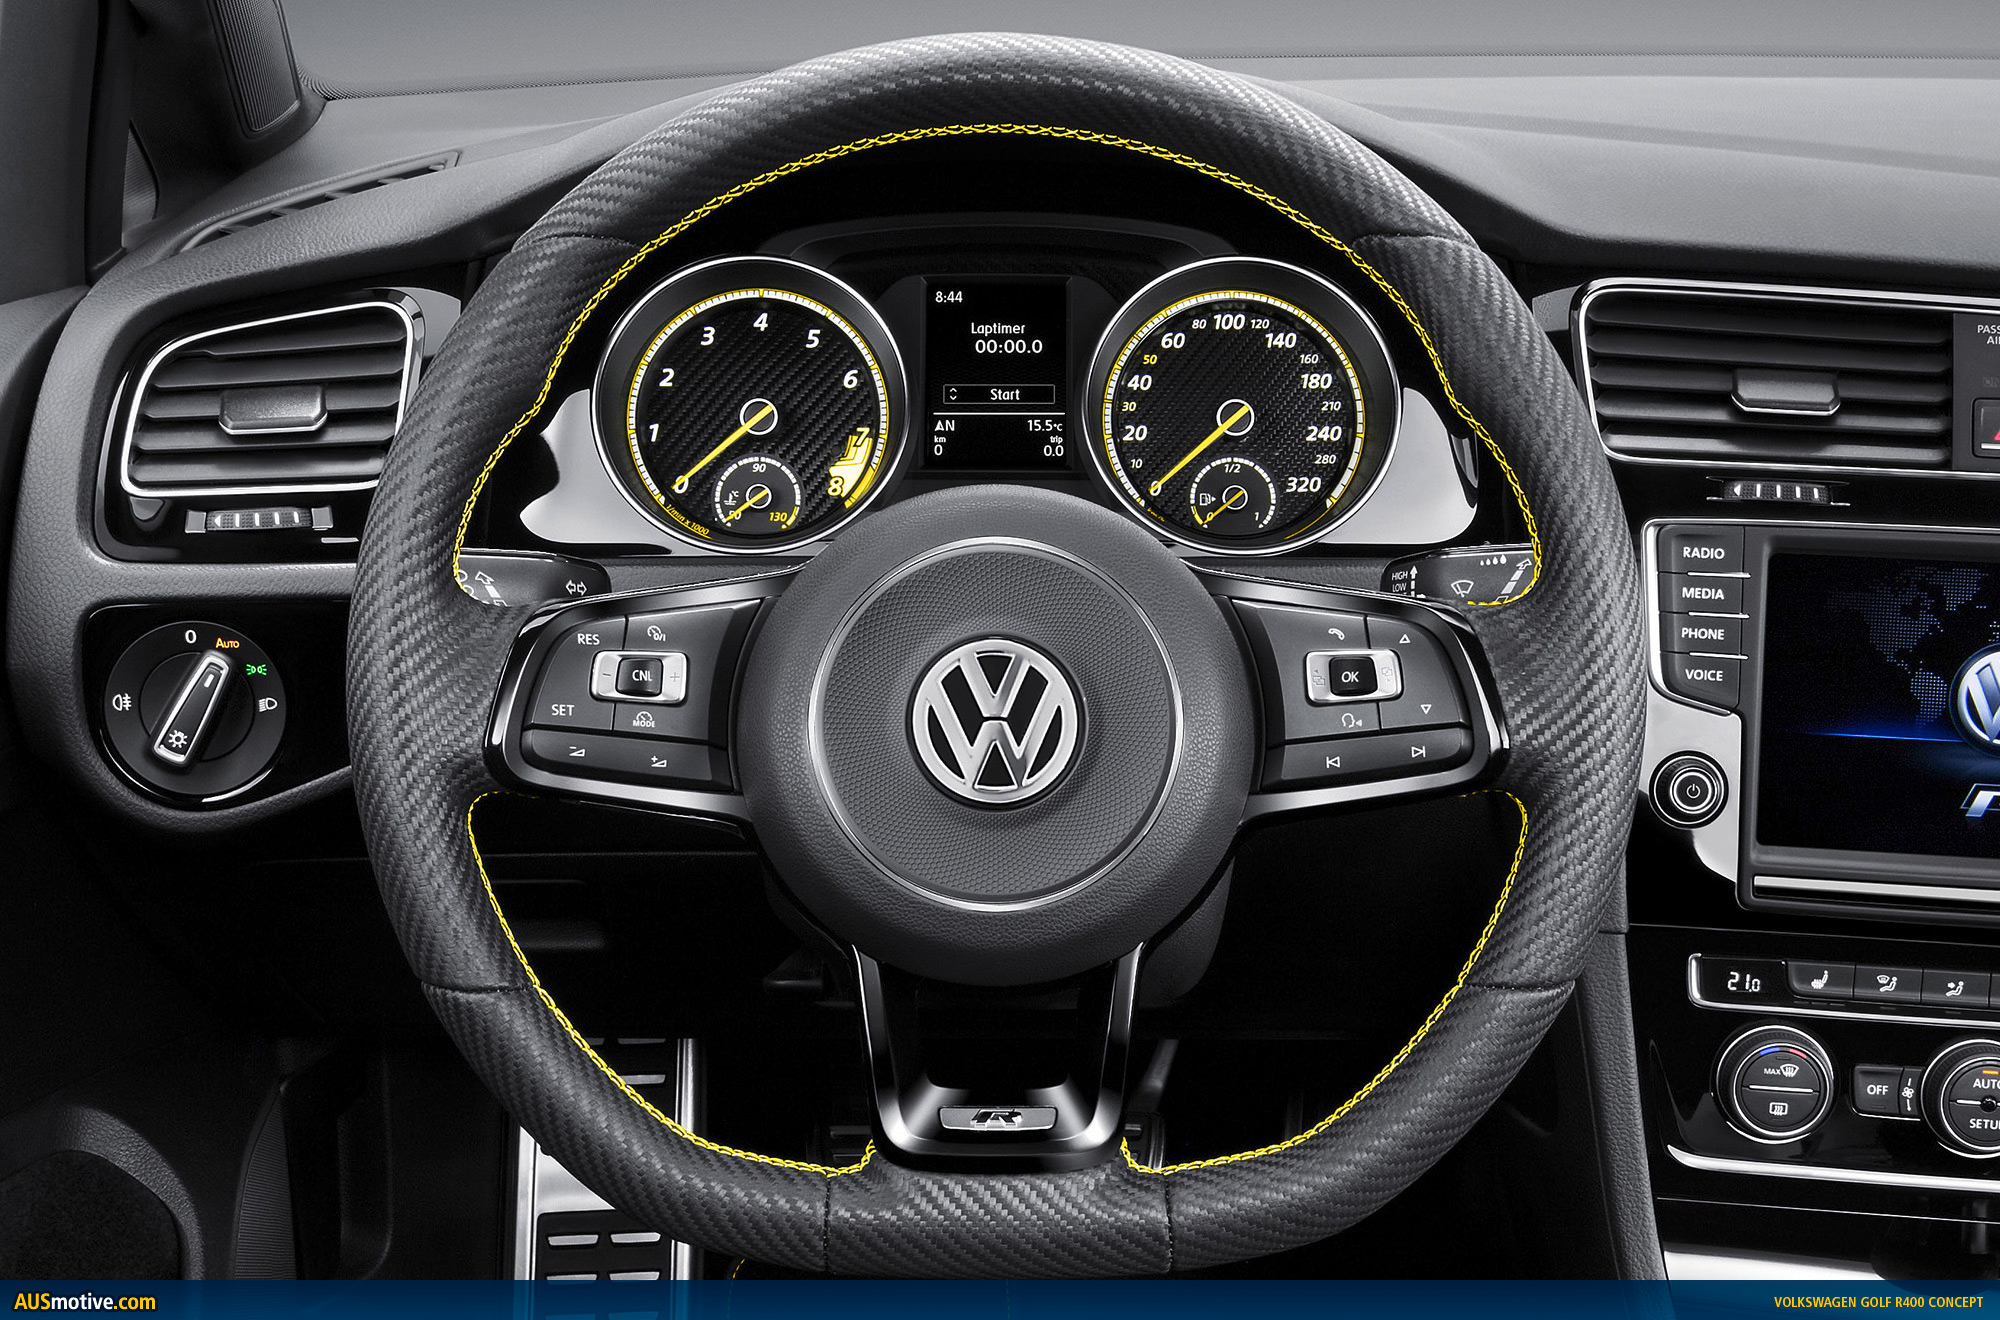 Volkswagen Golf R400 interior dashboard view